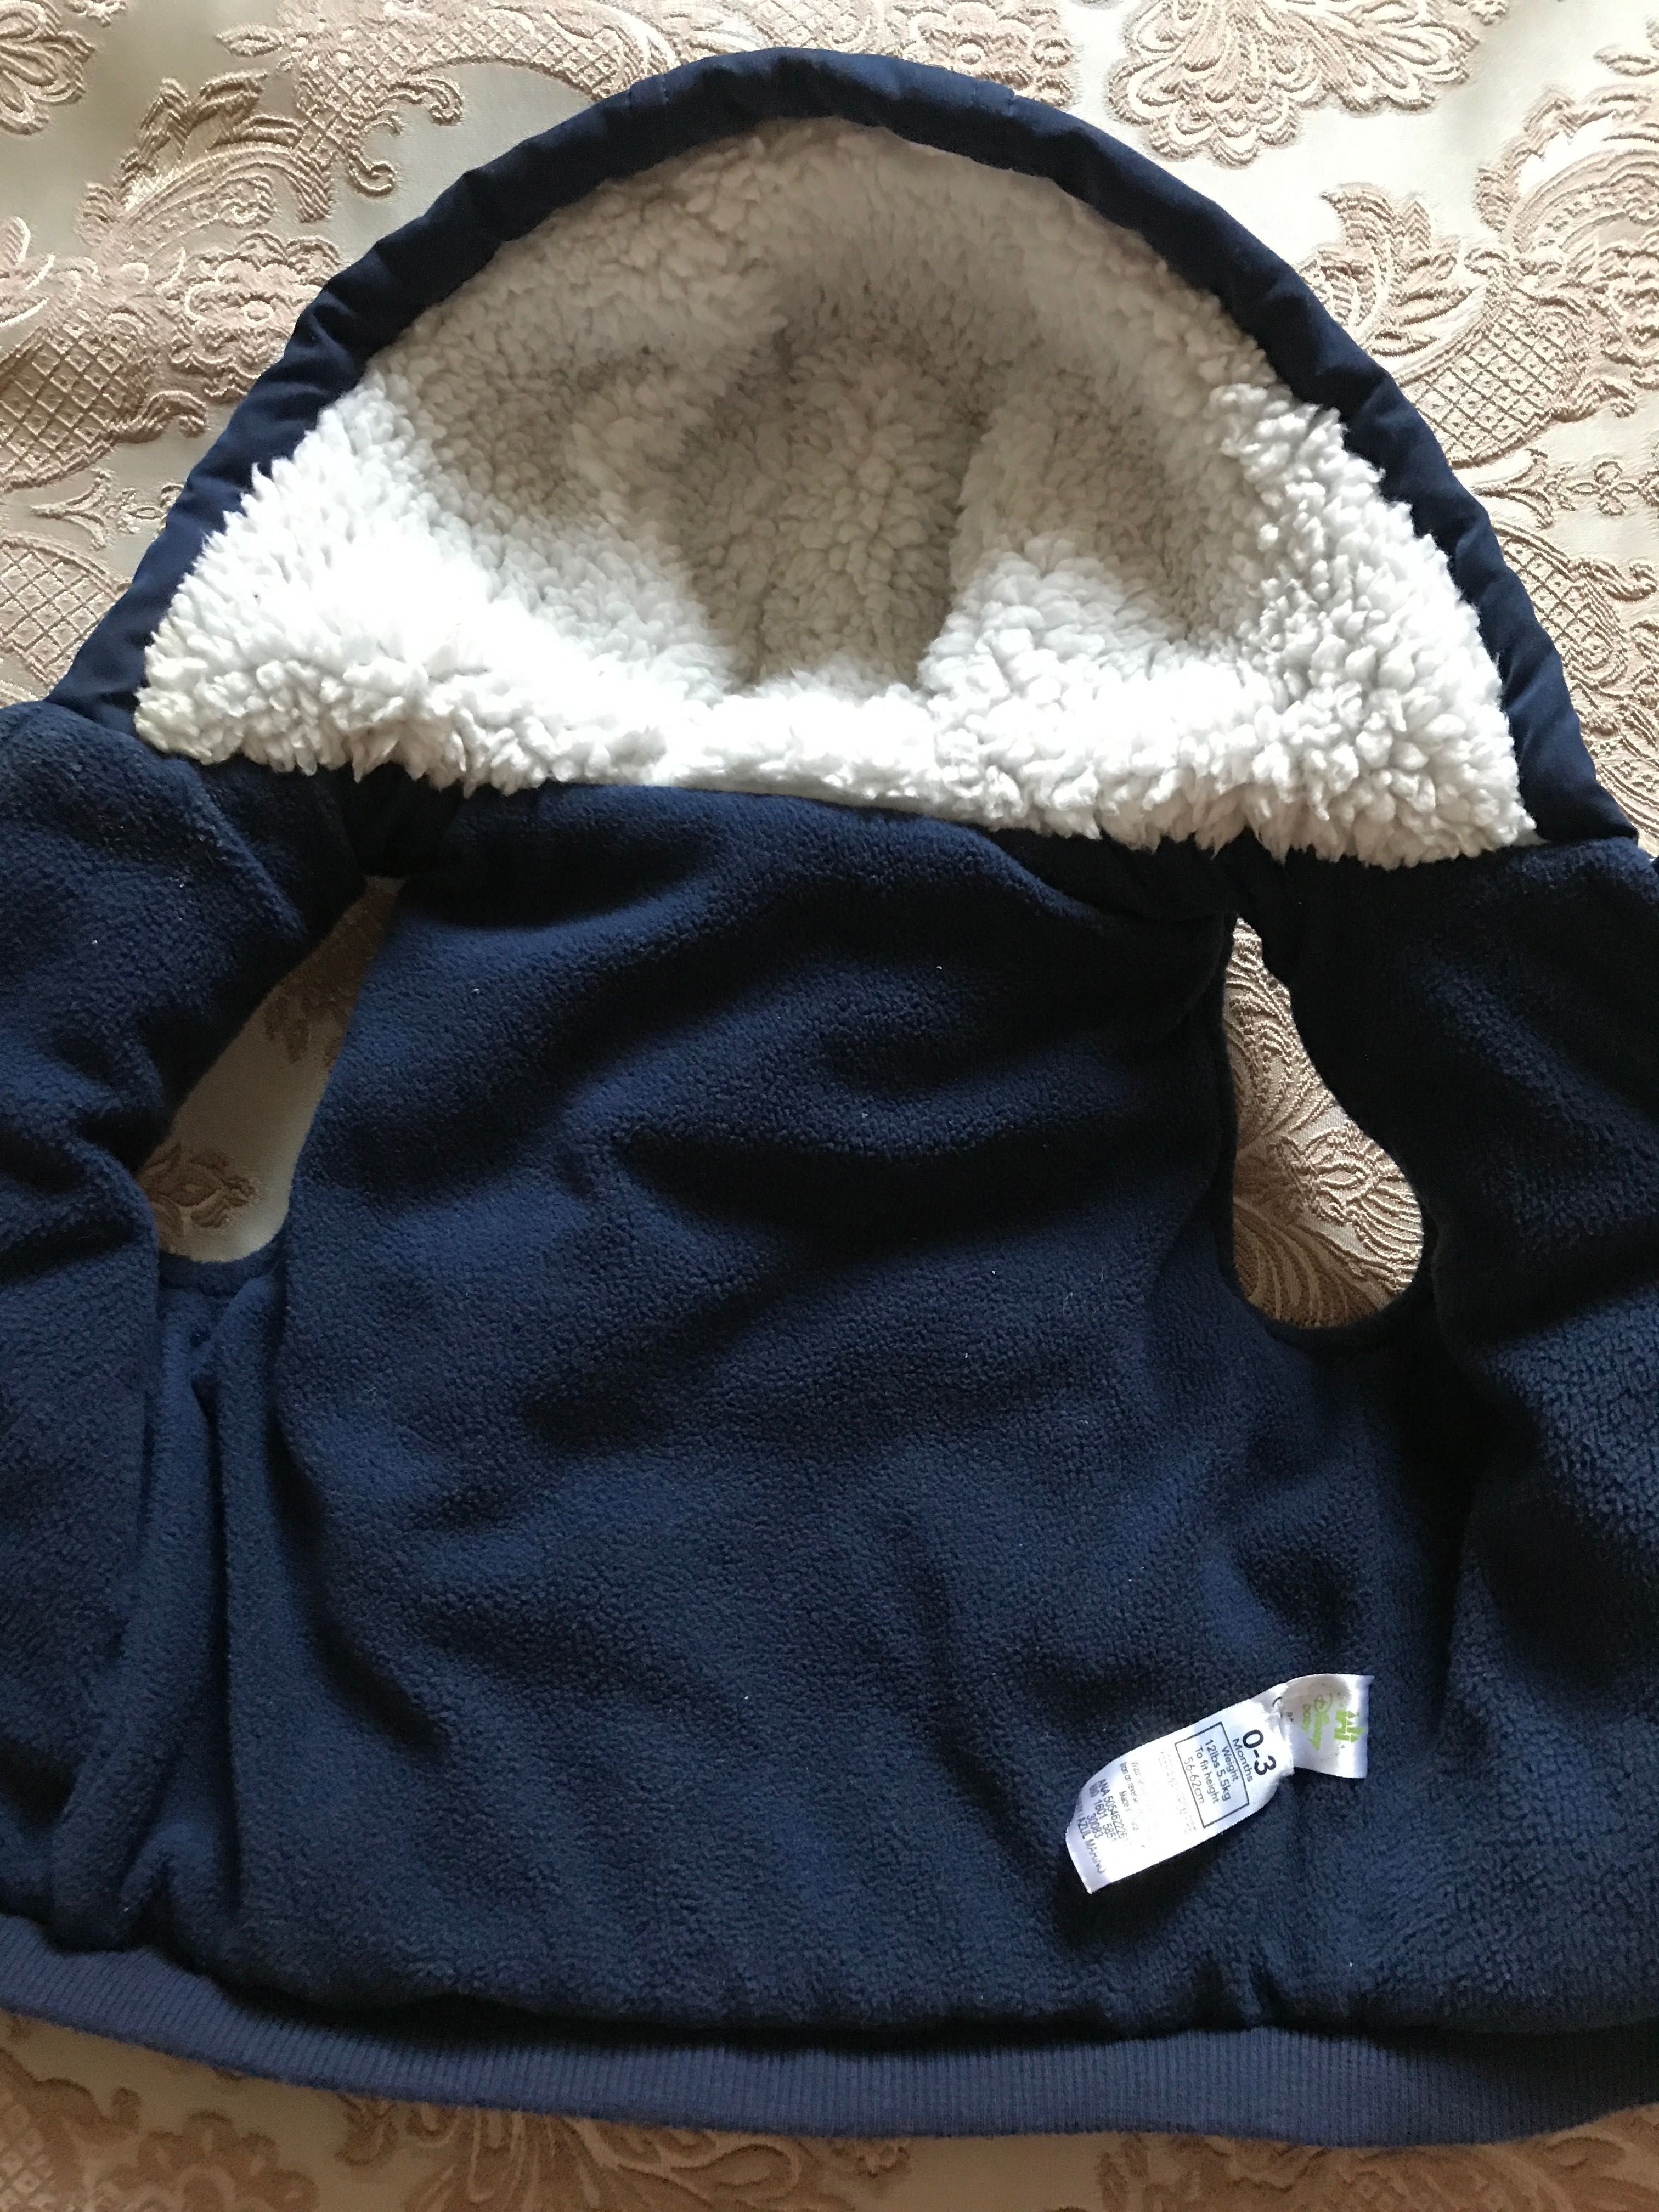 NextDisney baby курточка жилетка утеплённая весна-осень для малыша